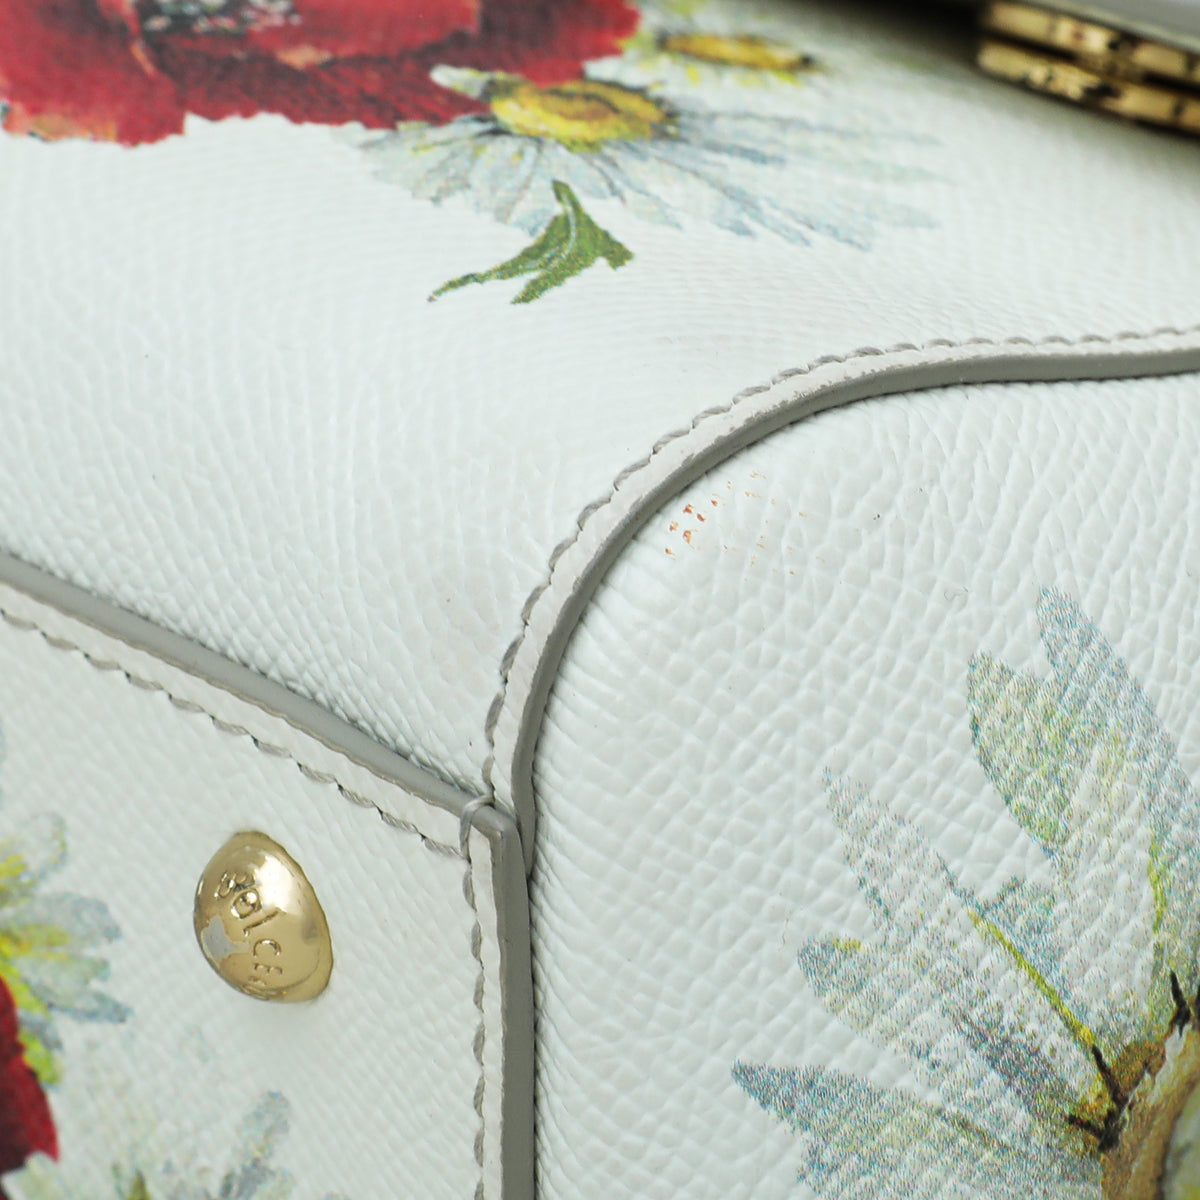 Dolce & Gabbana White Multicolor Flower Print Sicily Medium Bag